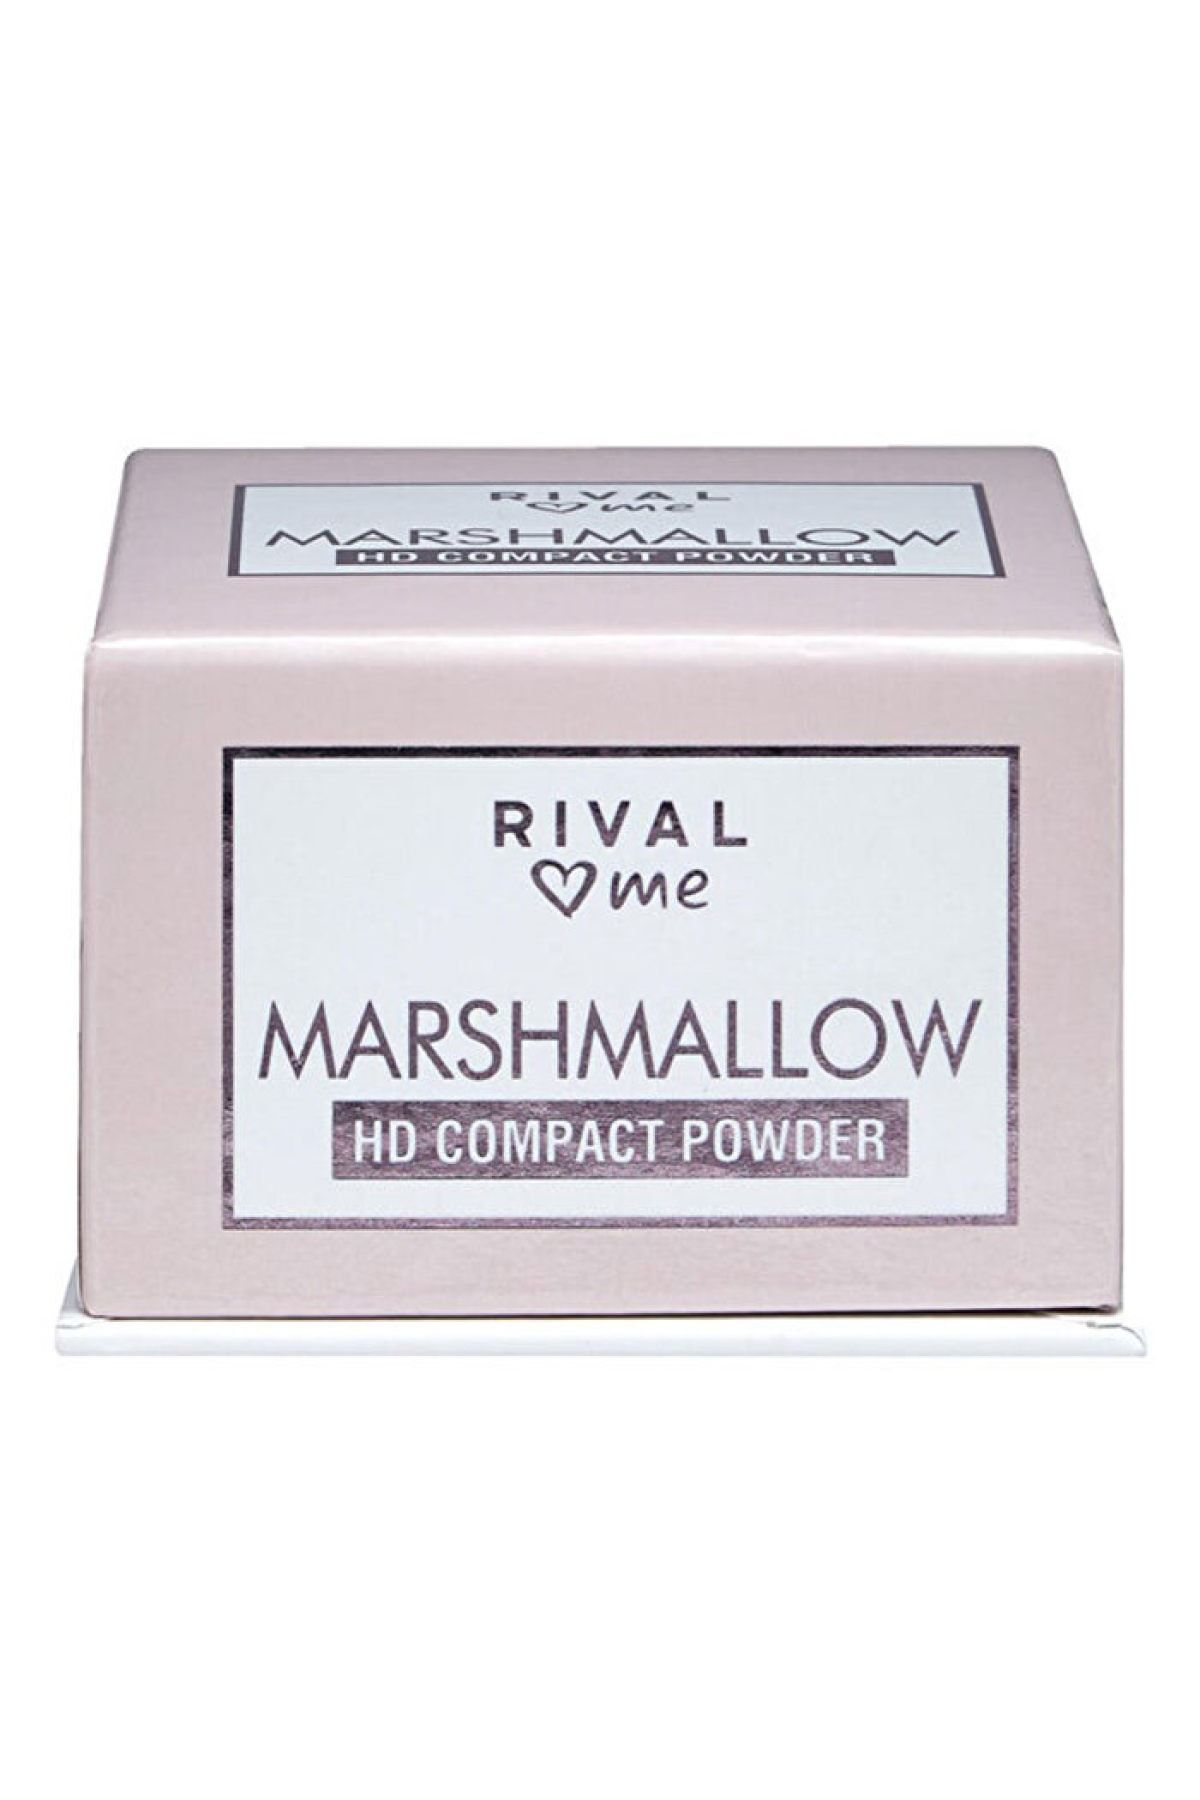 Rival Loves Me Pudra
hd Kompakt Marshmallow